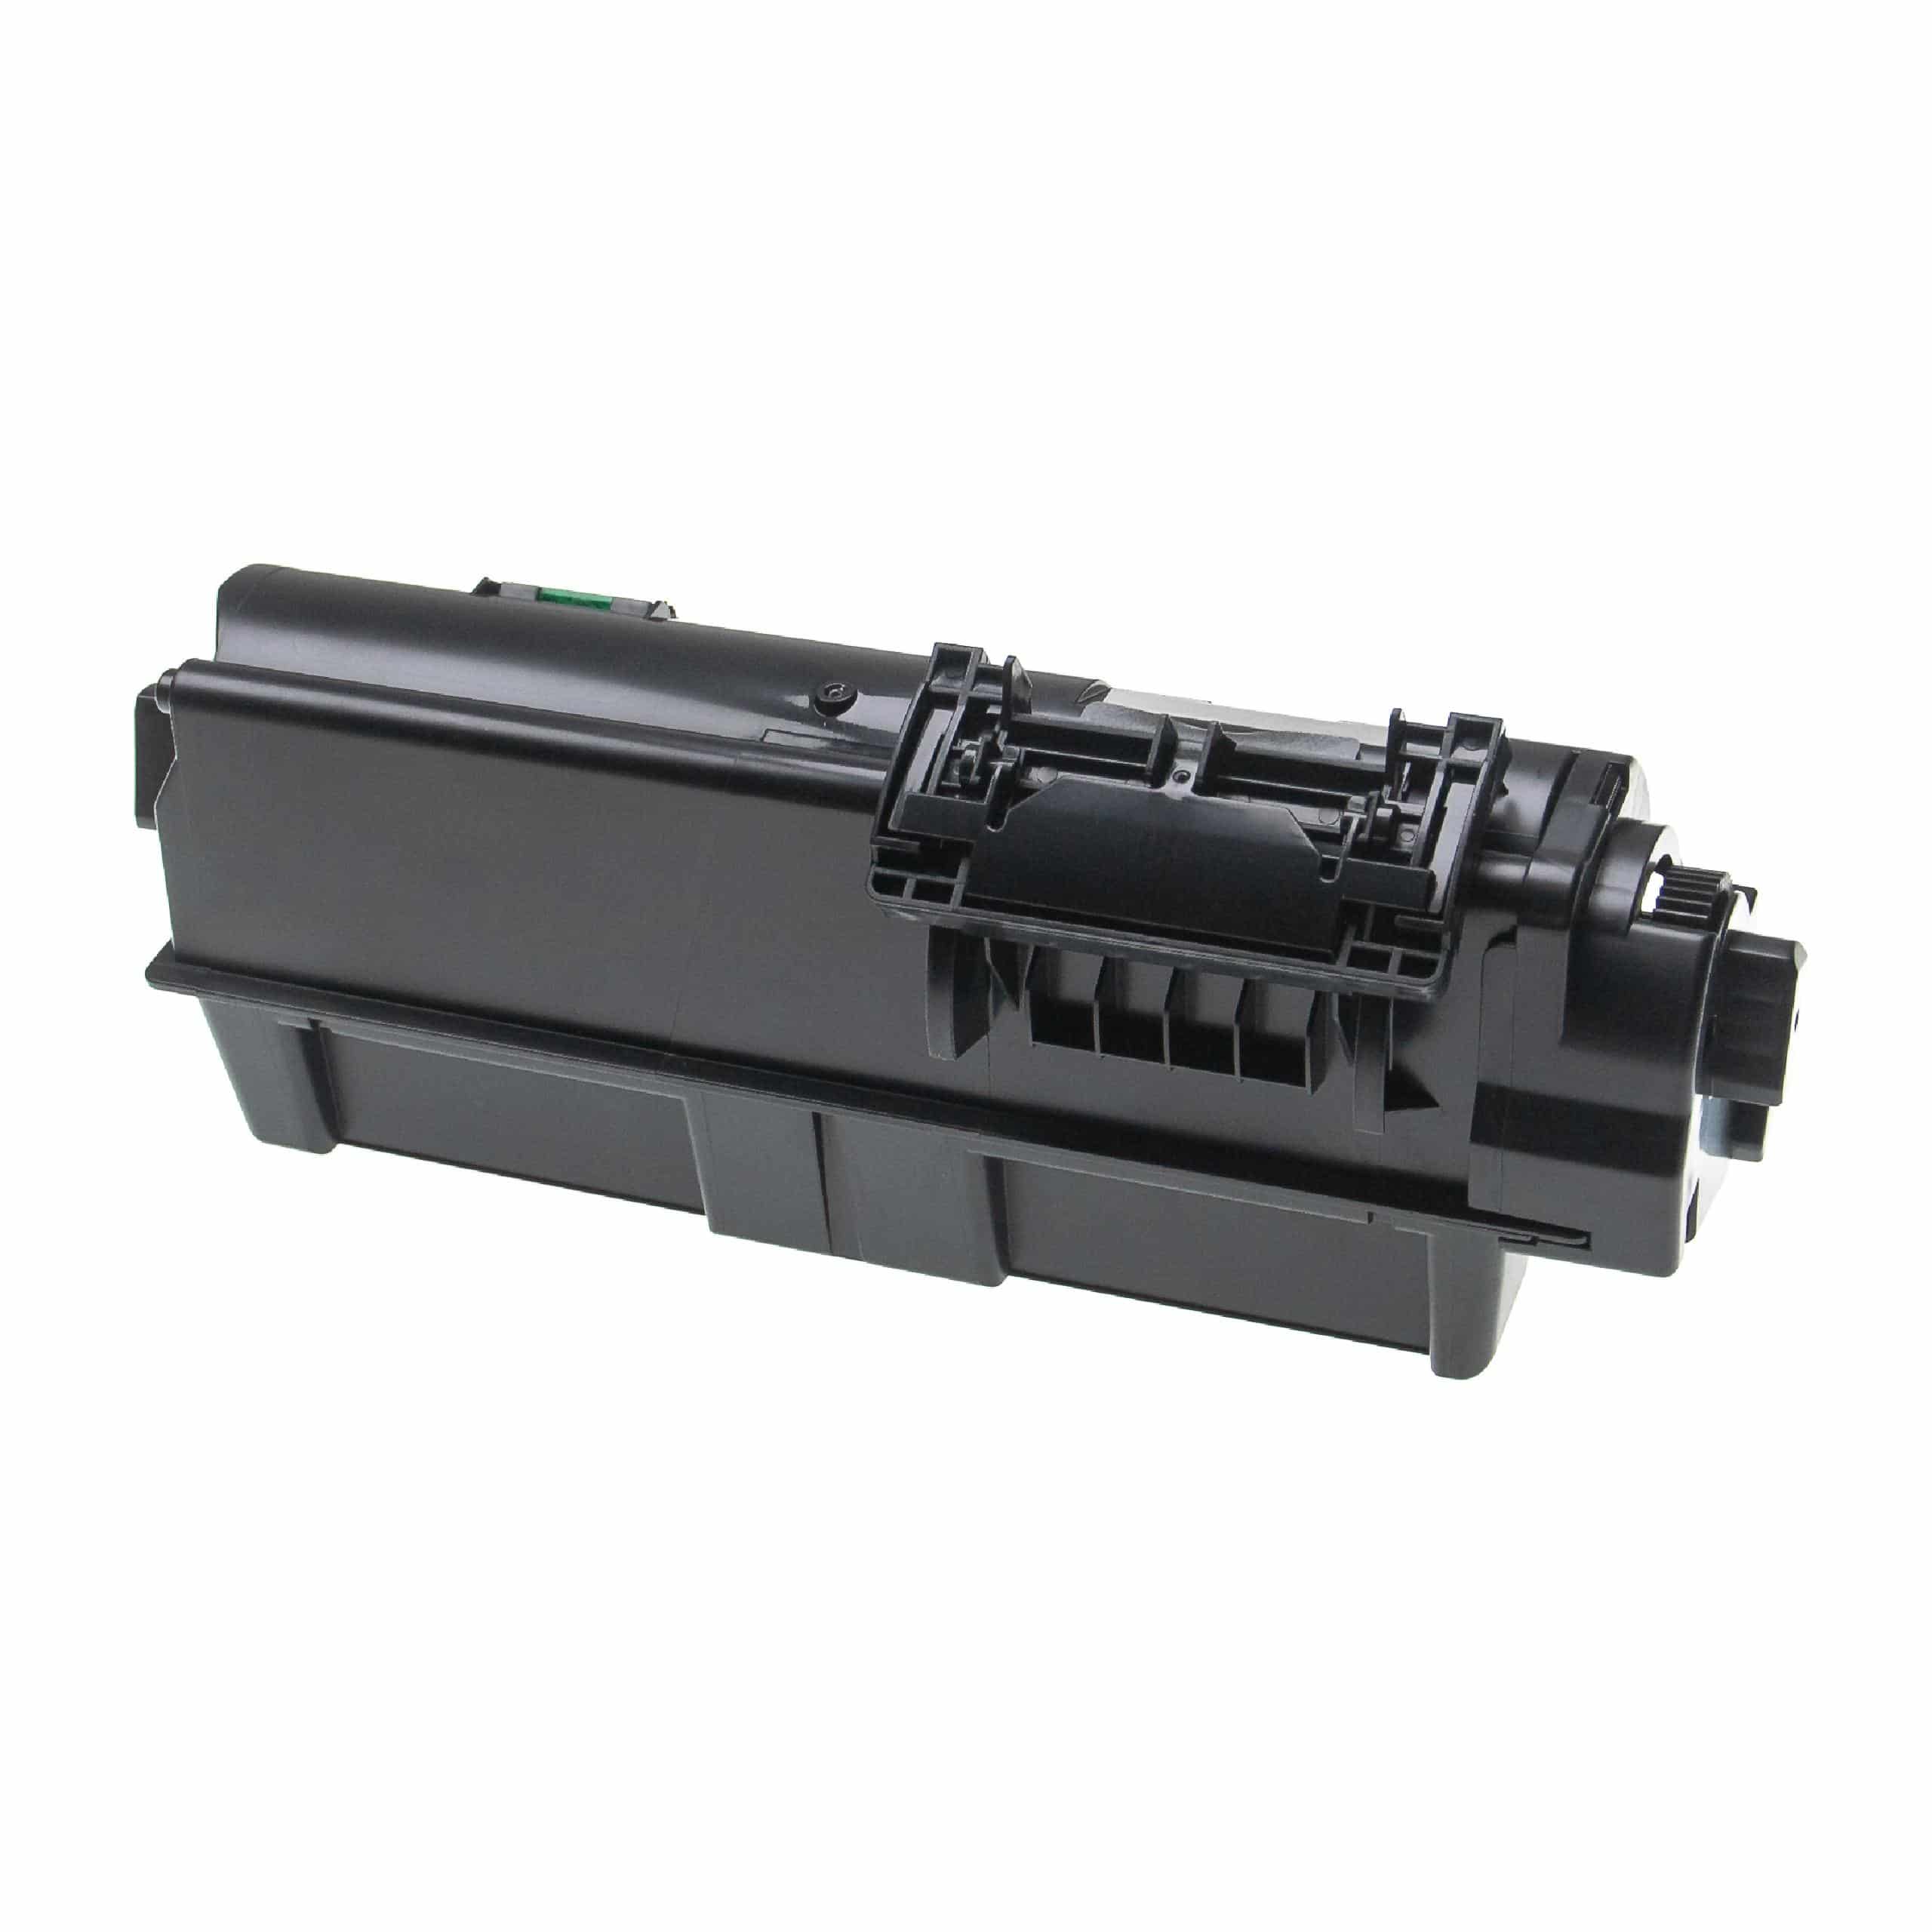 3x Cartouches de toner remplace Kyocera TK-1160 pour imprimante laser Kyocera, noir